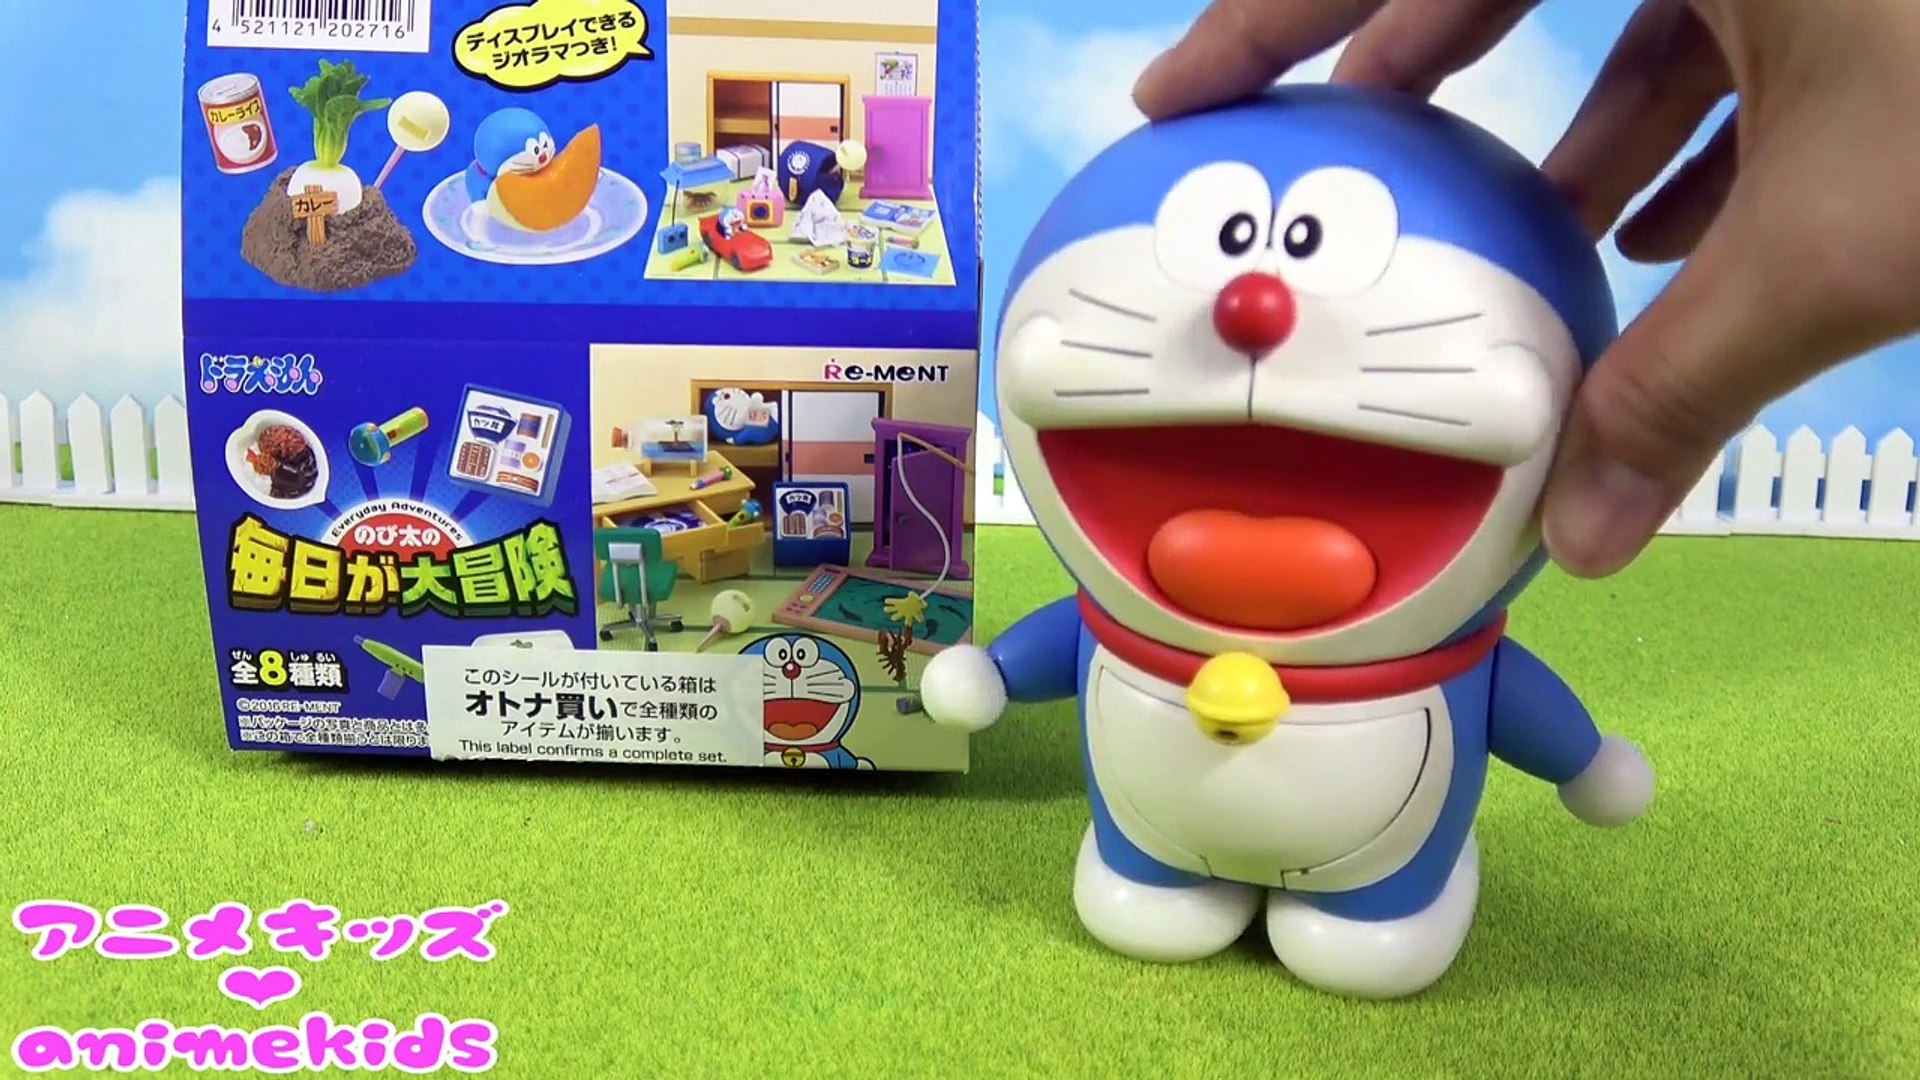 ドラえもん おもちゃ リーメント 毎日が大冒険 Animekids アニメキッズ Animation Doraemon Re Ment Toy Dailymotion Video